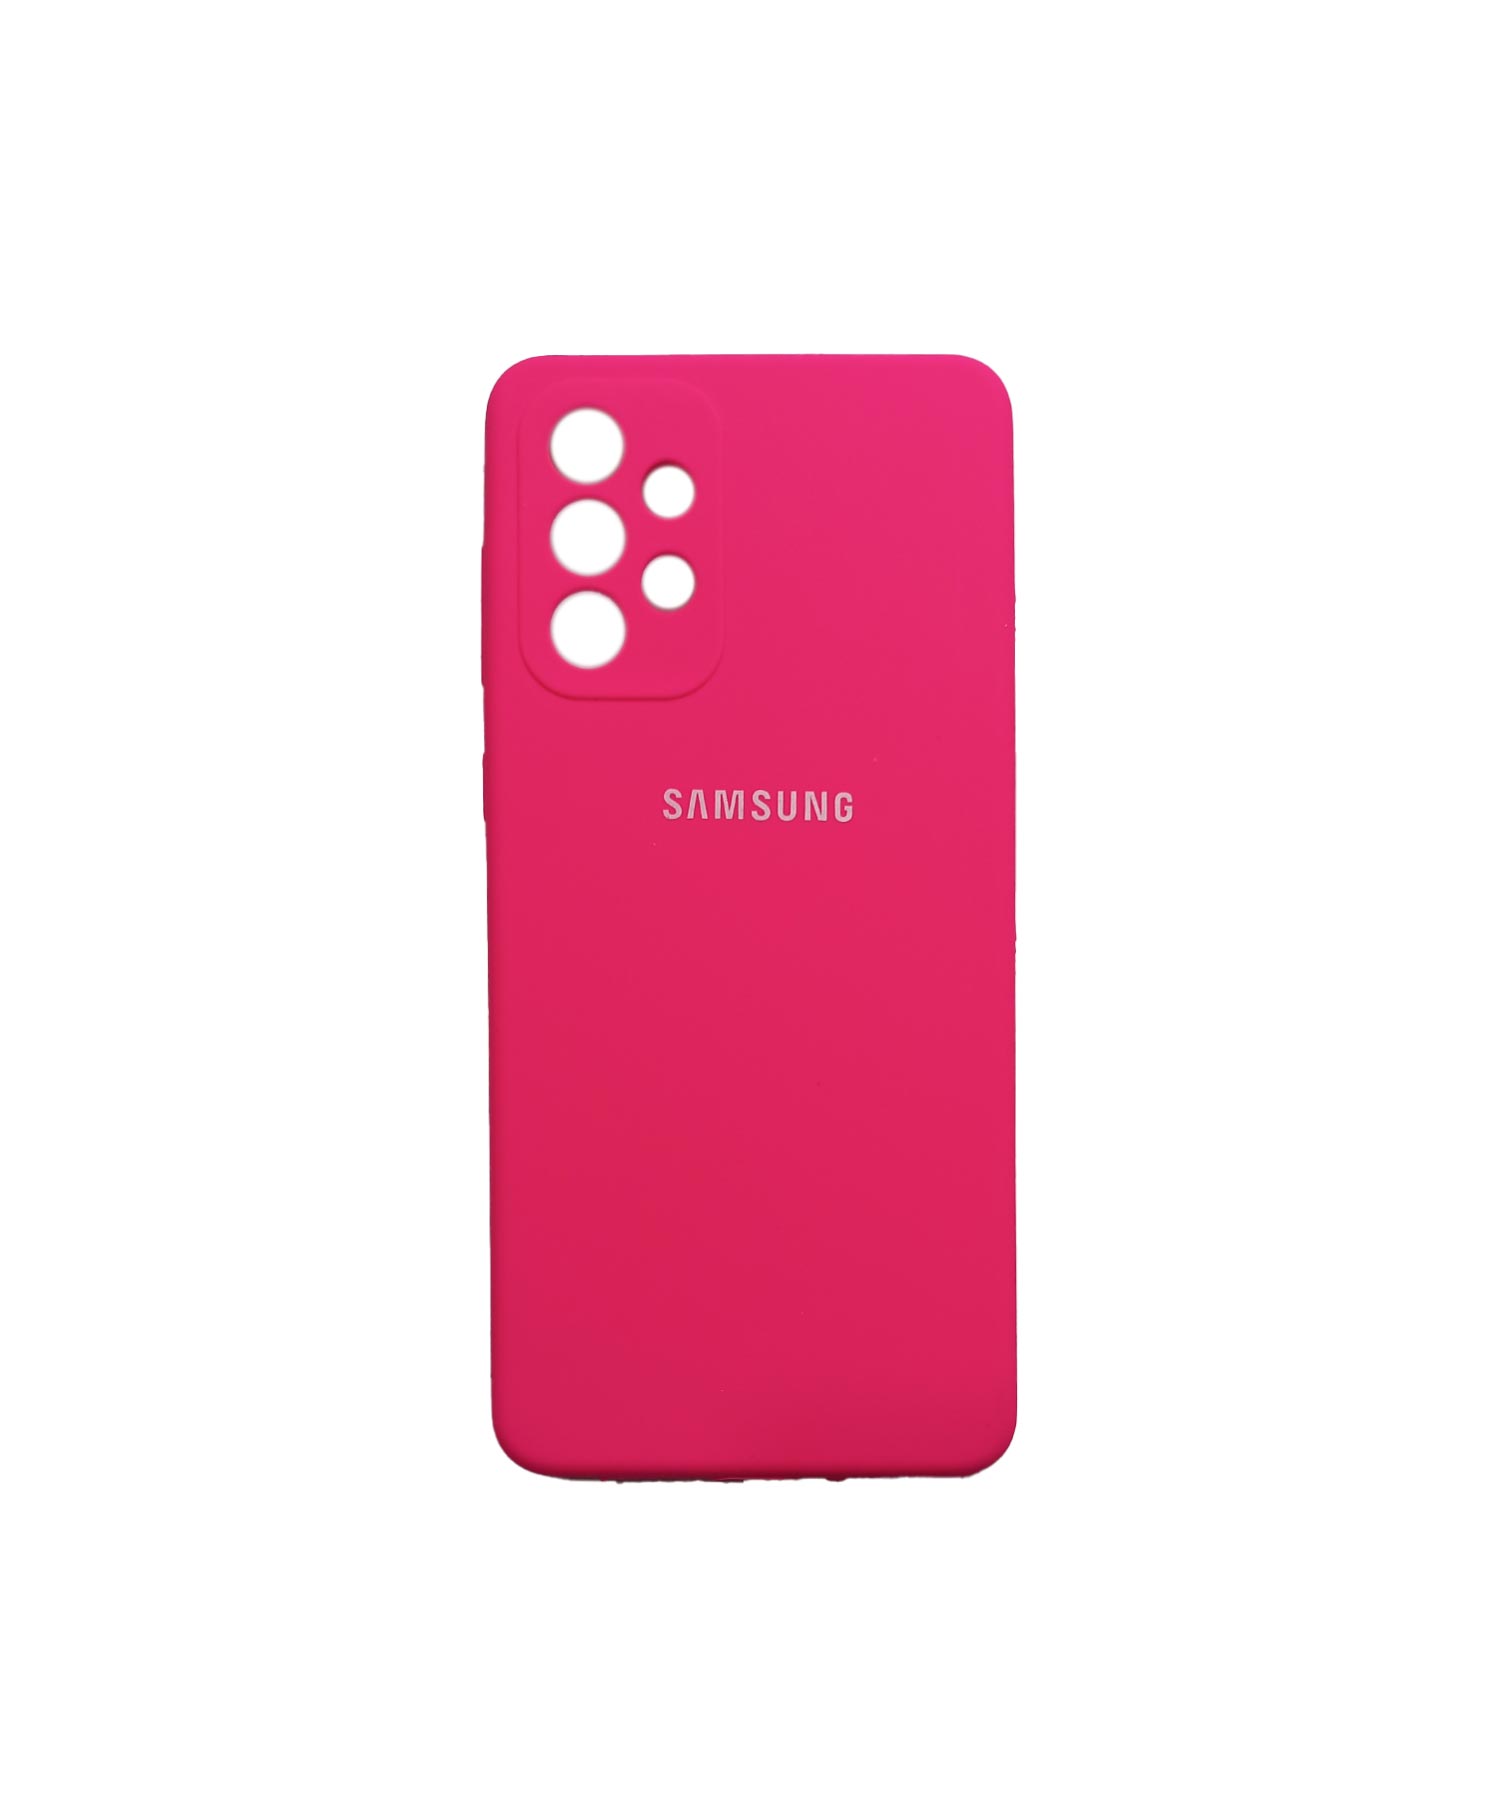 قاب سیلیکونی گوشی موبایل سامسونگ Samsung A72 5G